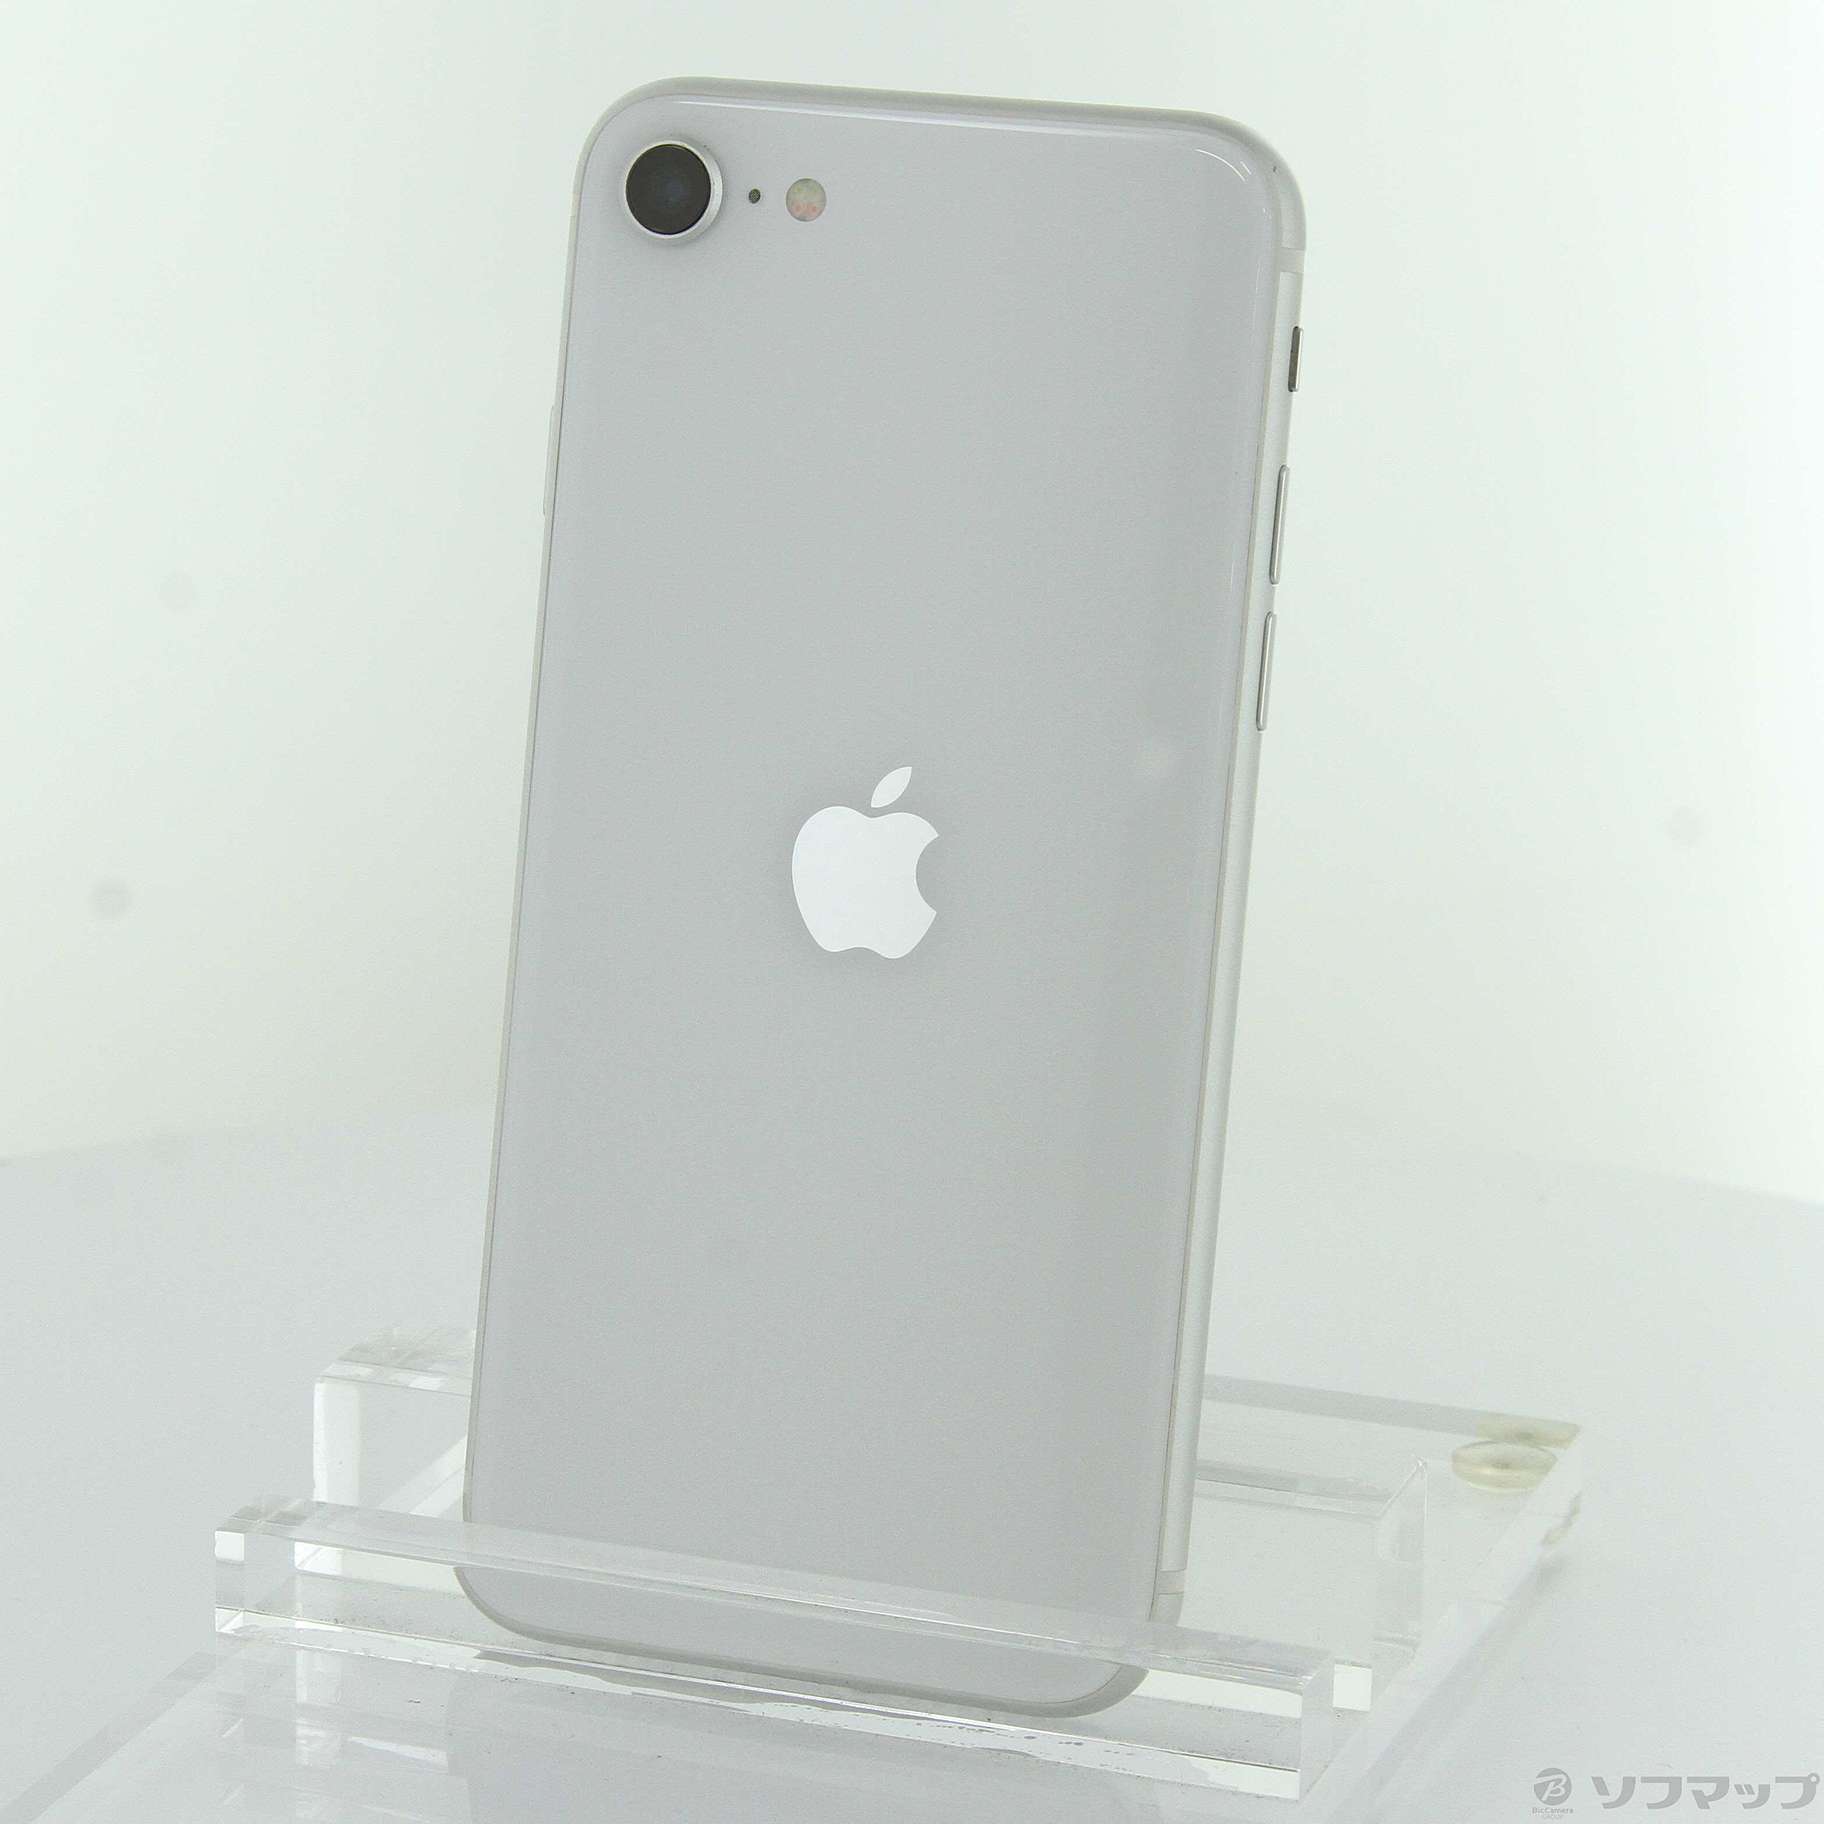 アップル Apple iPhone SE 128GB ホワイト SIMフリー